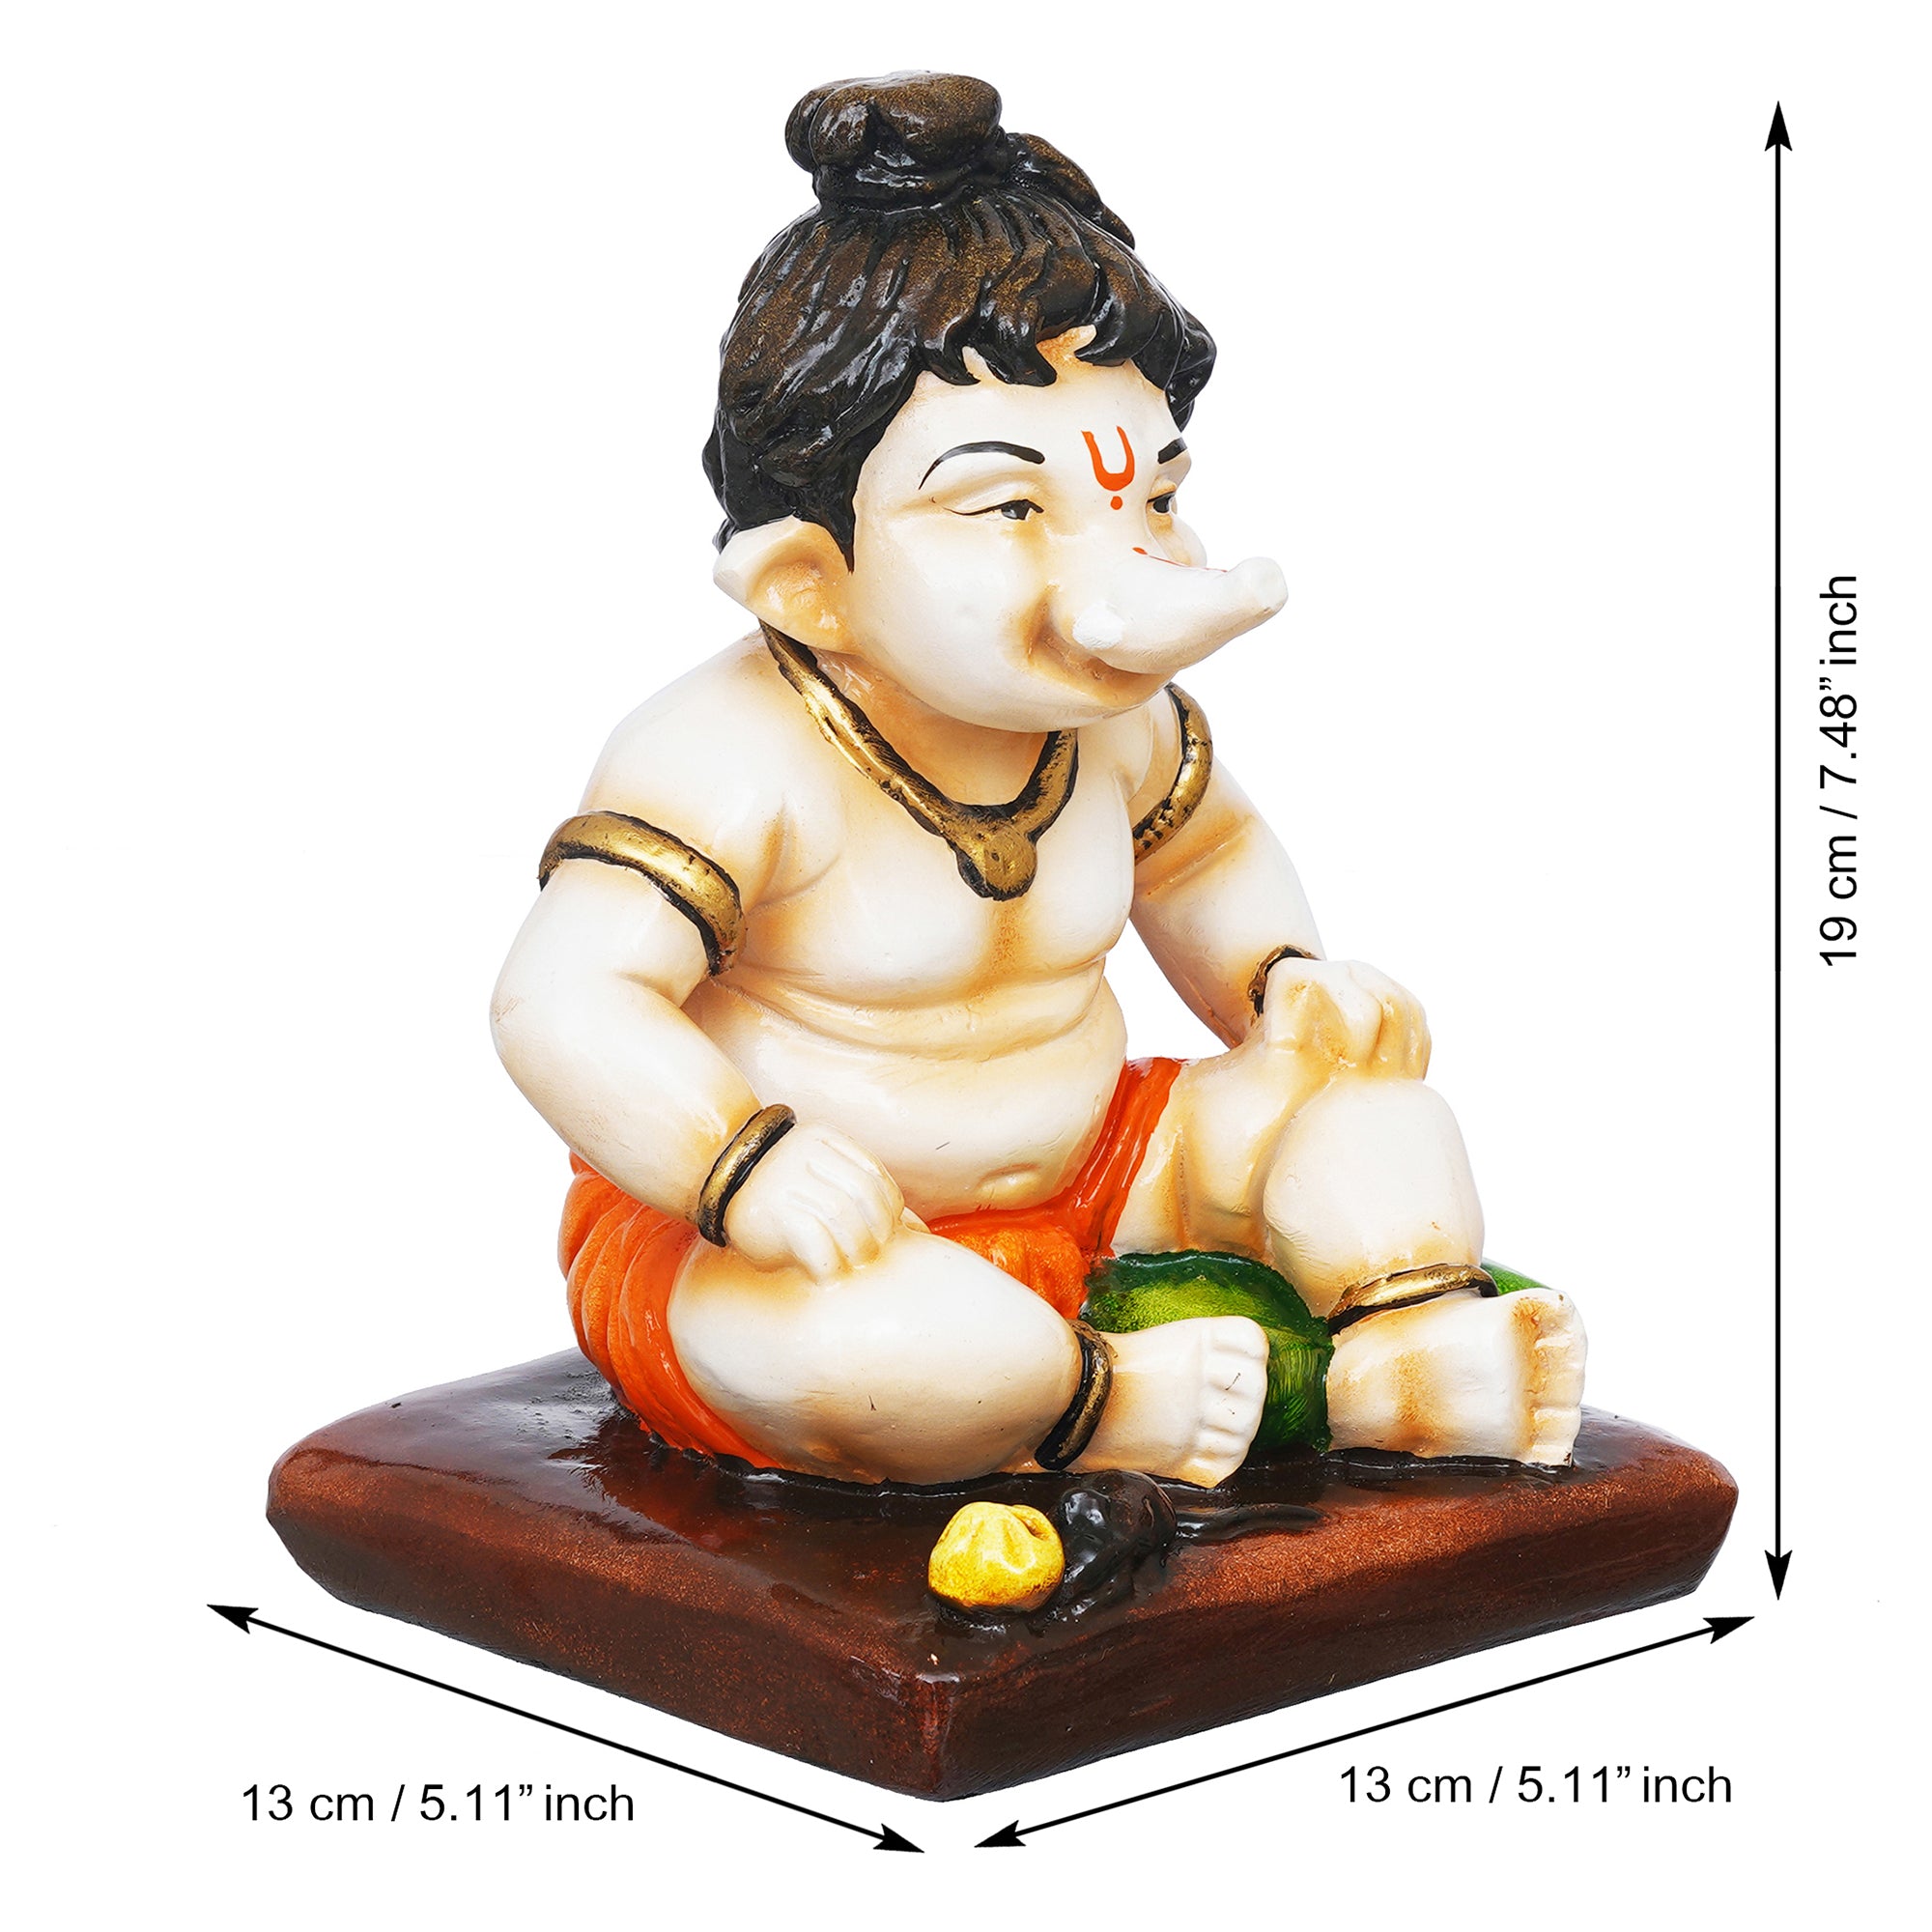 eCraftIndia Multicolor Polyresin Handcrafted Sitting Lord Ganesha Idol 3